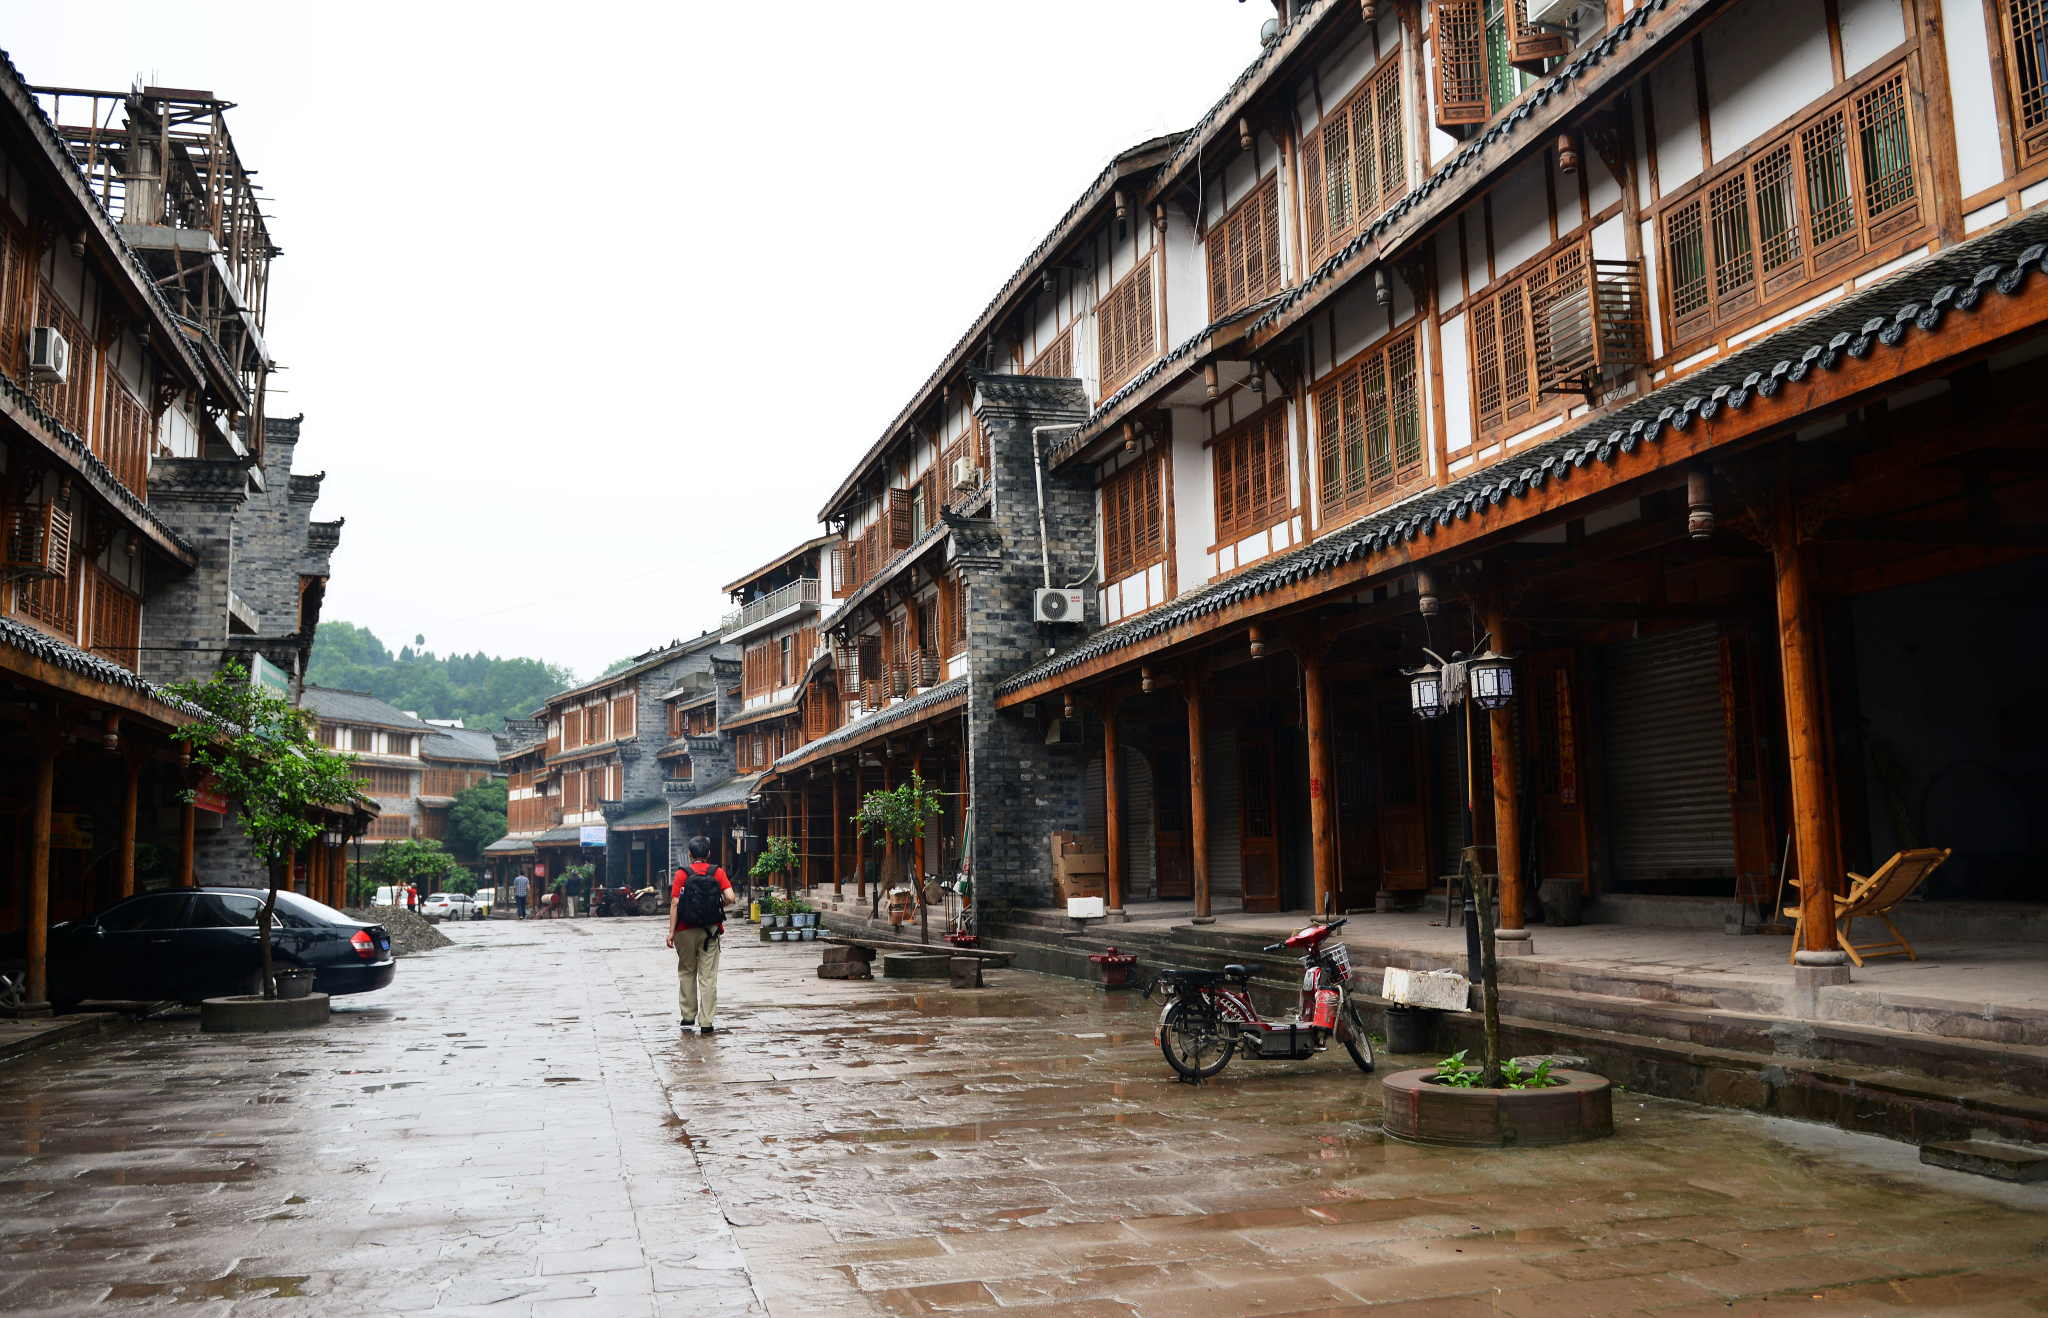 郪江古镇,一座千年古城,一段历史文化的传承